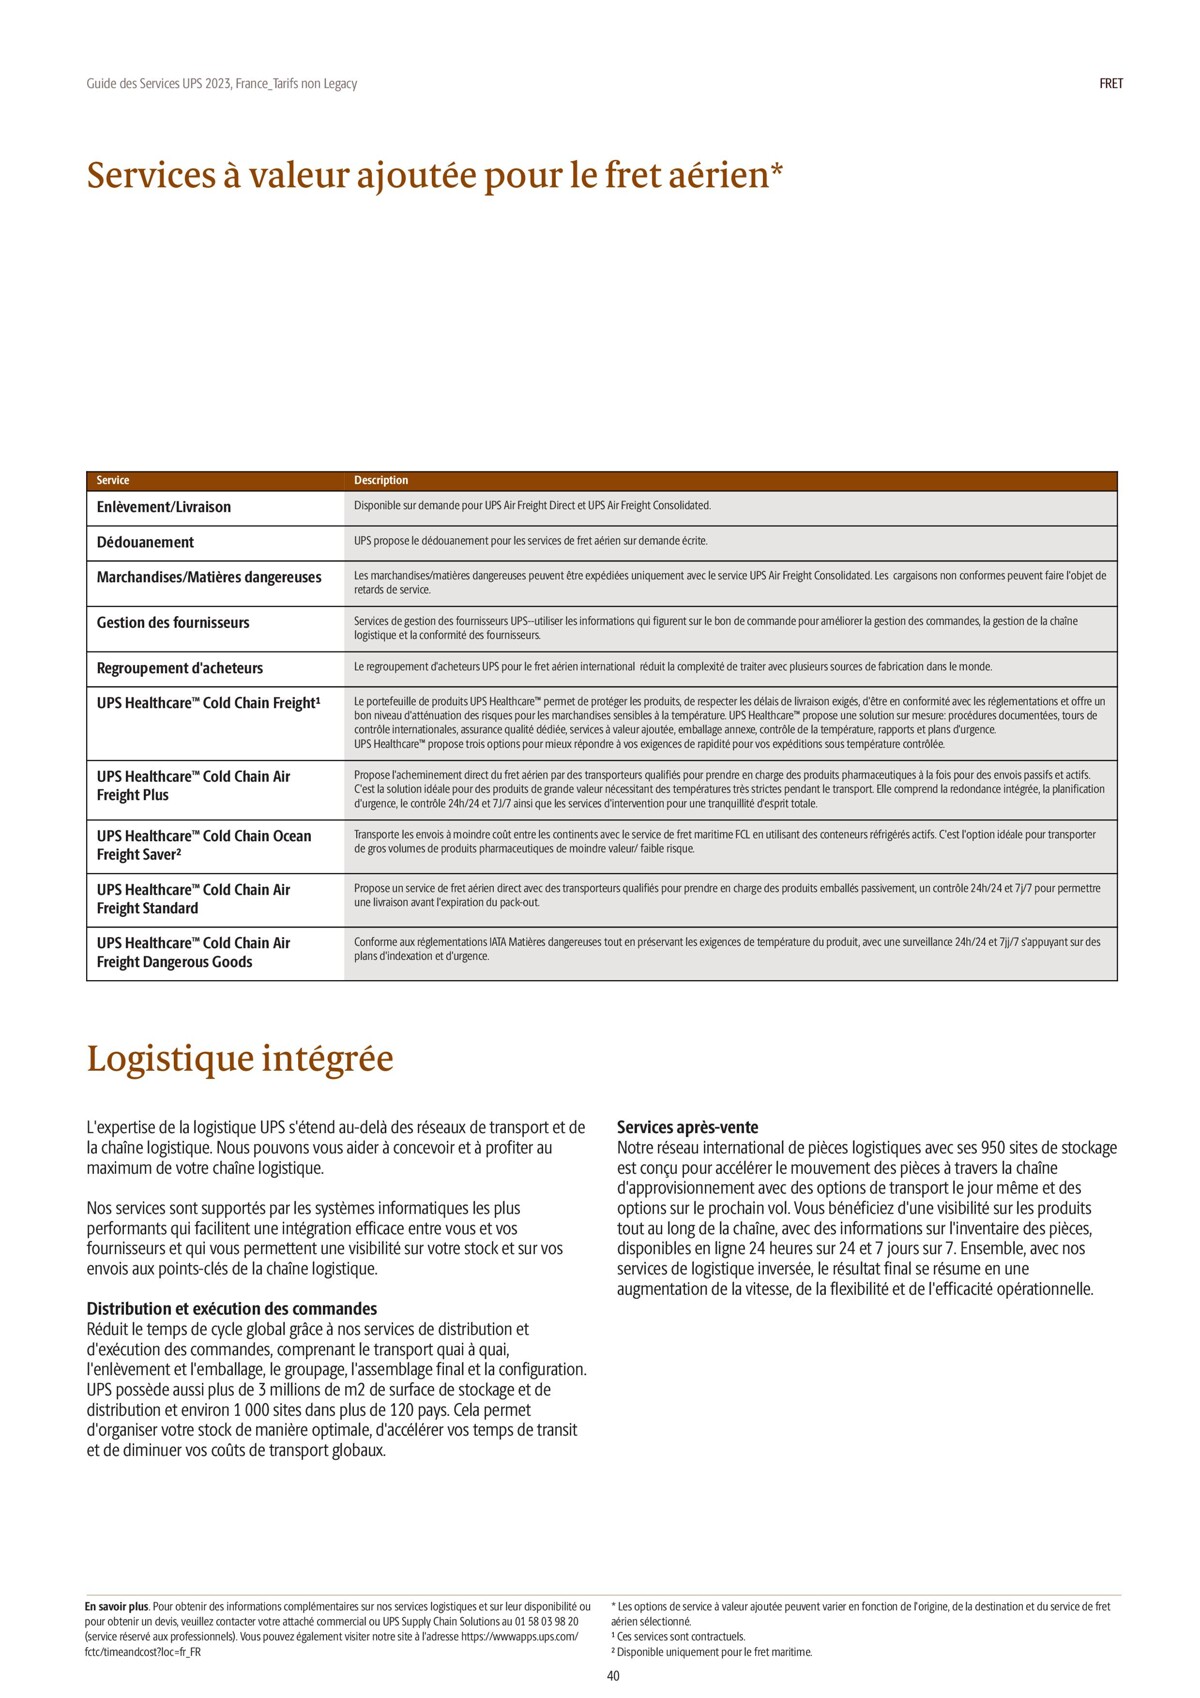 Catalogue Guide des Services 2023, page 00040